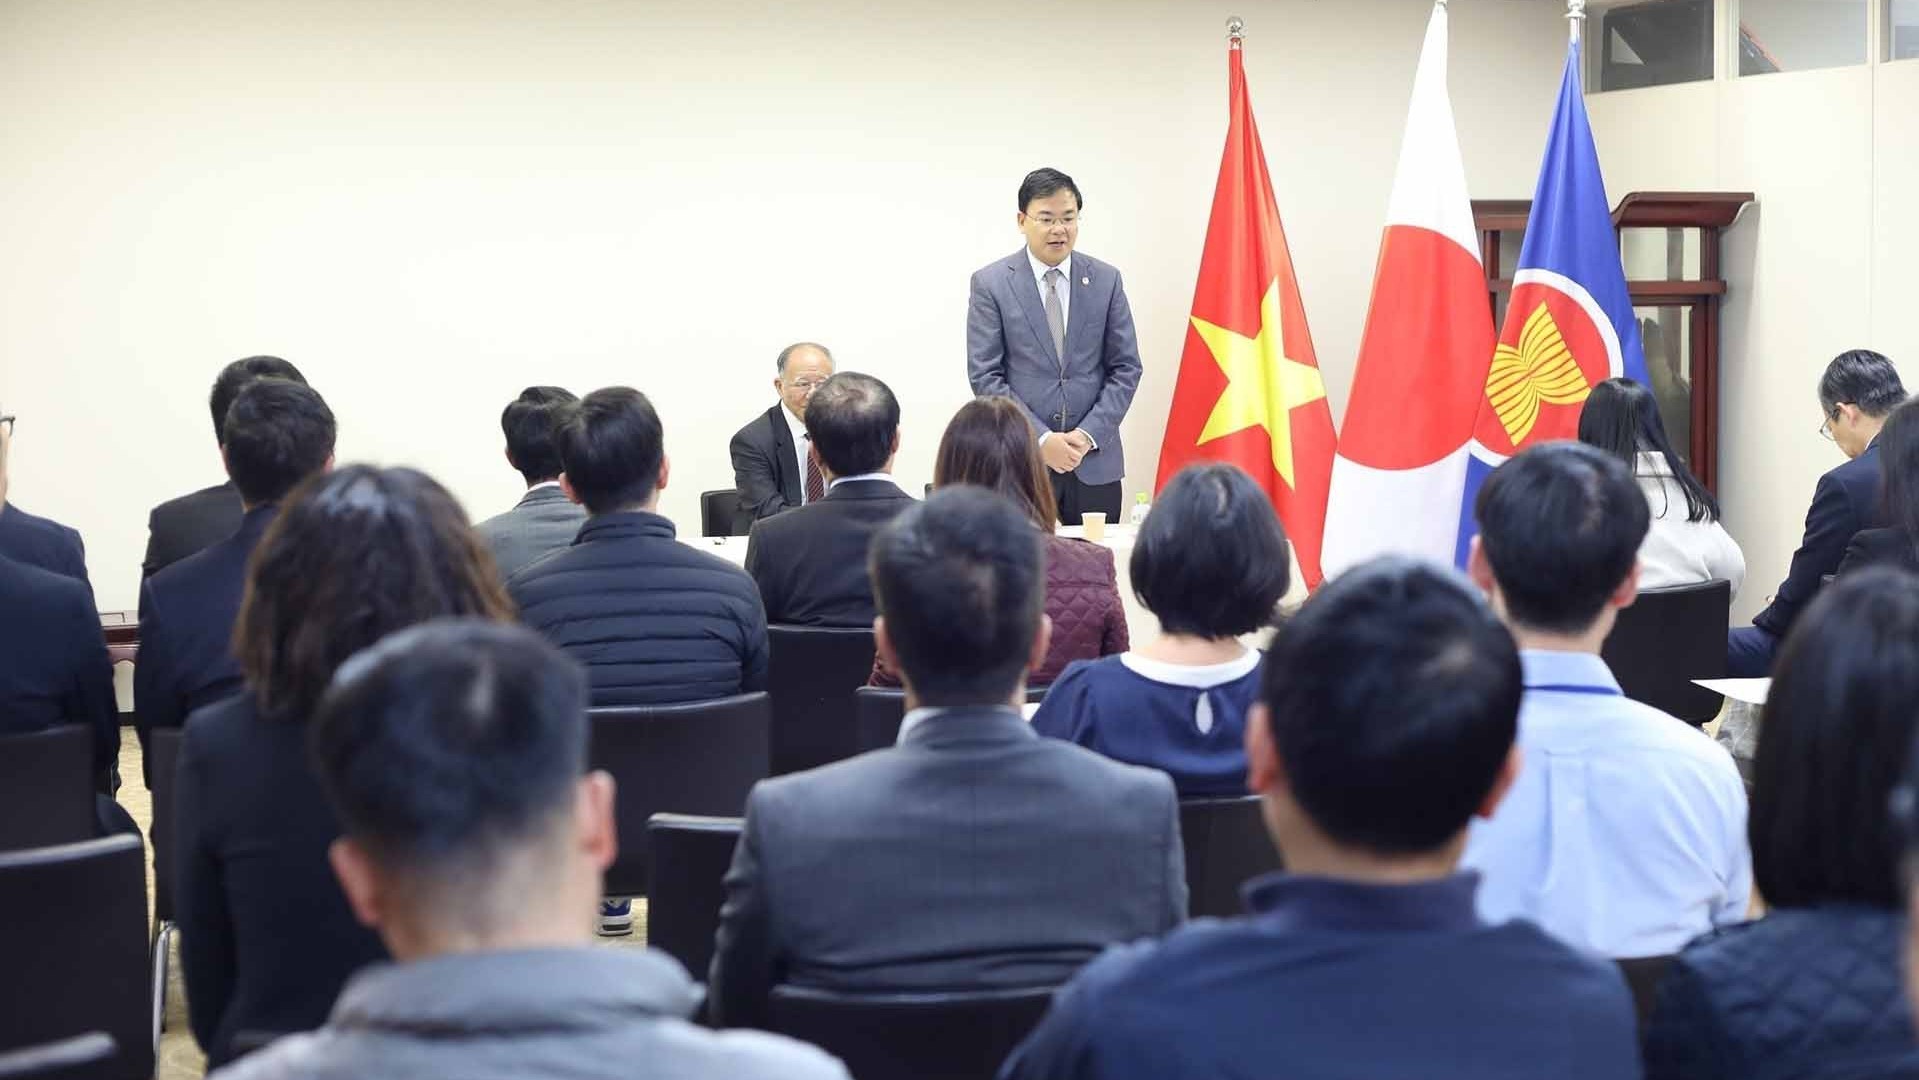 Đại sứ quán Việt Nam tại Nhật Bản tổ chức buổi nói chuyện về cuộc đời và sự nghiệp của Chủ tịch Hồ Chí Minh